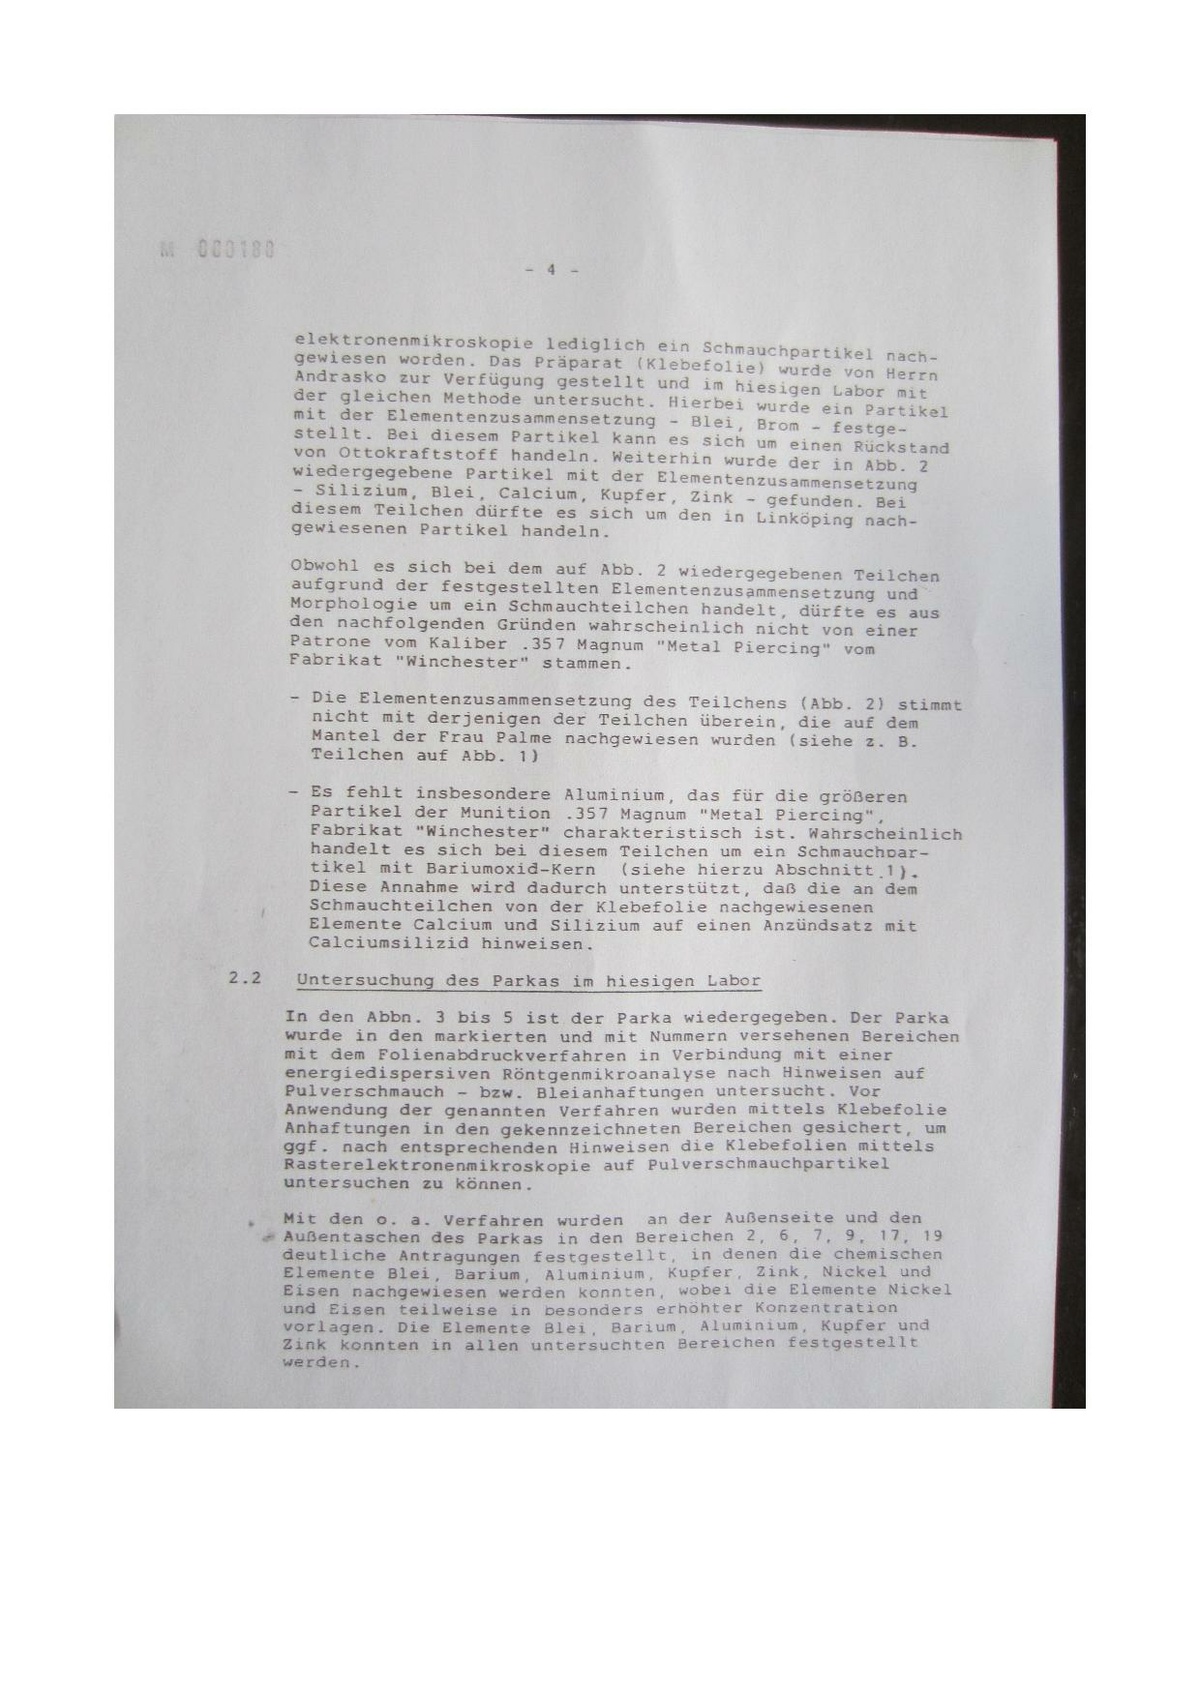 Pol-1986-05-09 N3217-01-B Skottspårsundersökning-BKA-ang.-VG-original.pdf